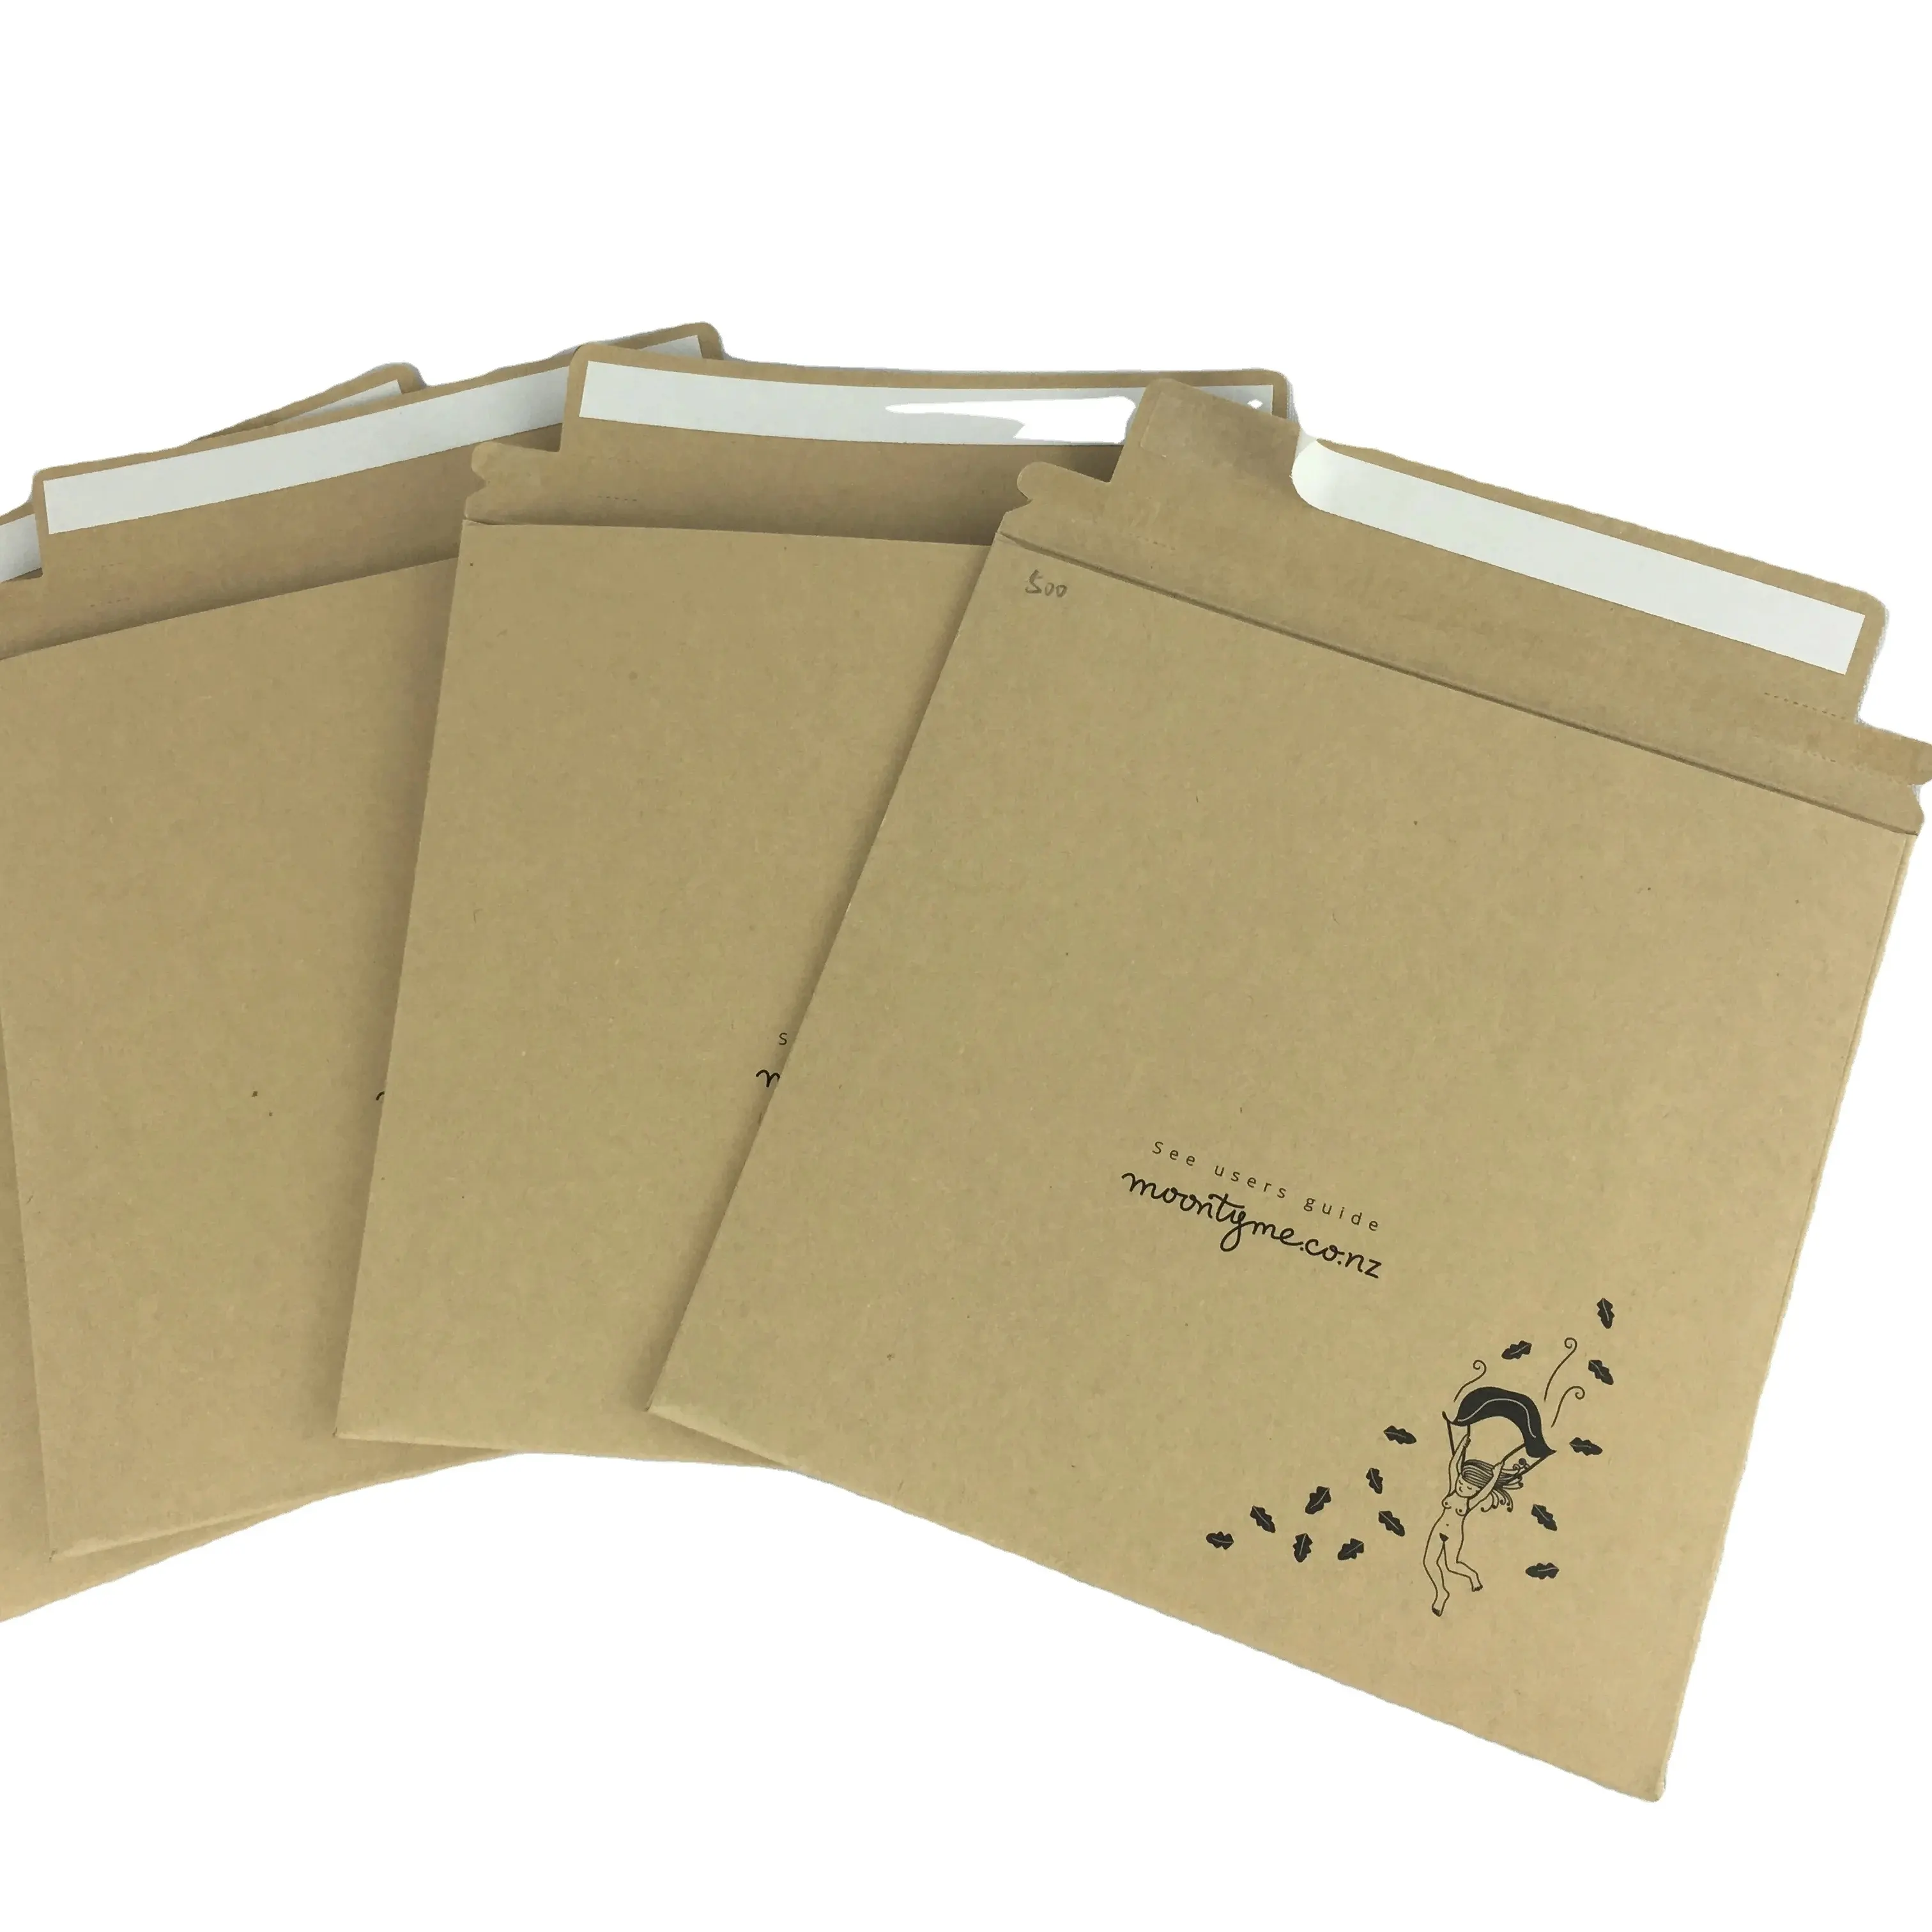 Enveloppes en papier postal en carton rigide kraft 500g personnalisées A6 enveloppes rigides A4 à ne pas plier à plat enveloppes pour calendrier de l'avent